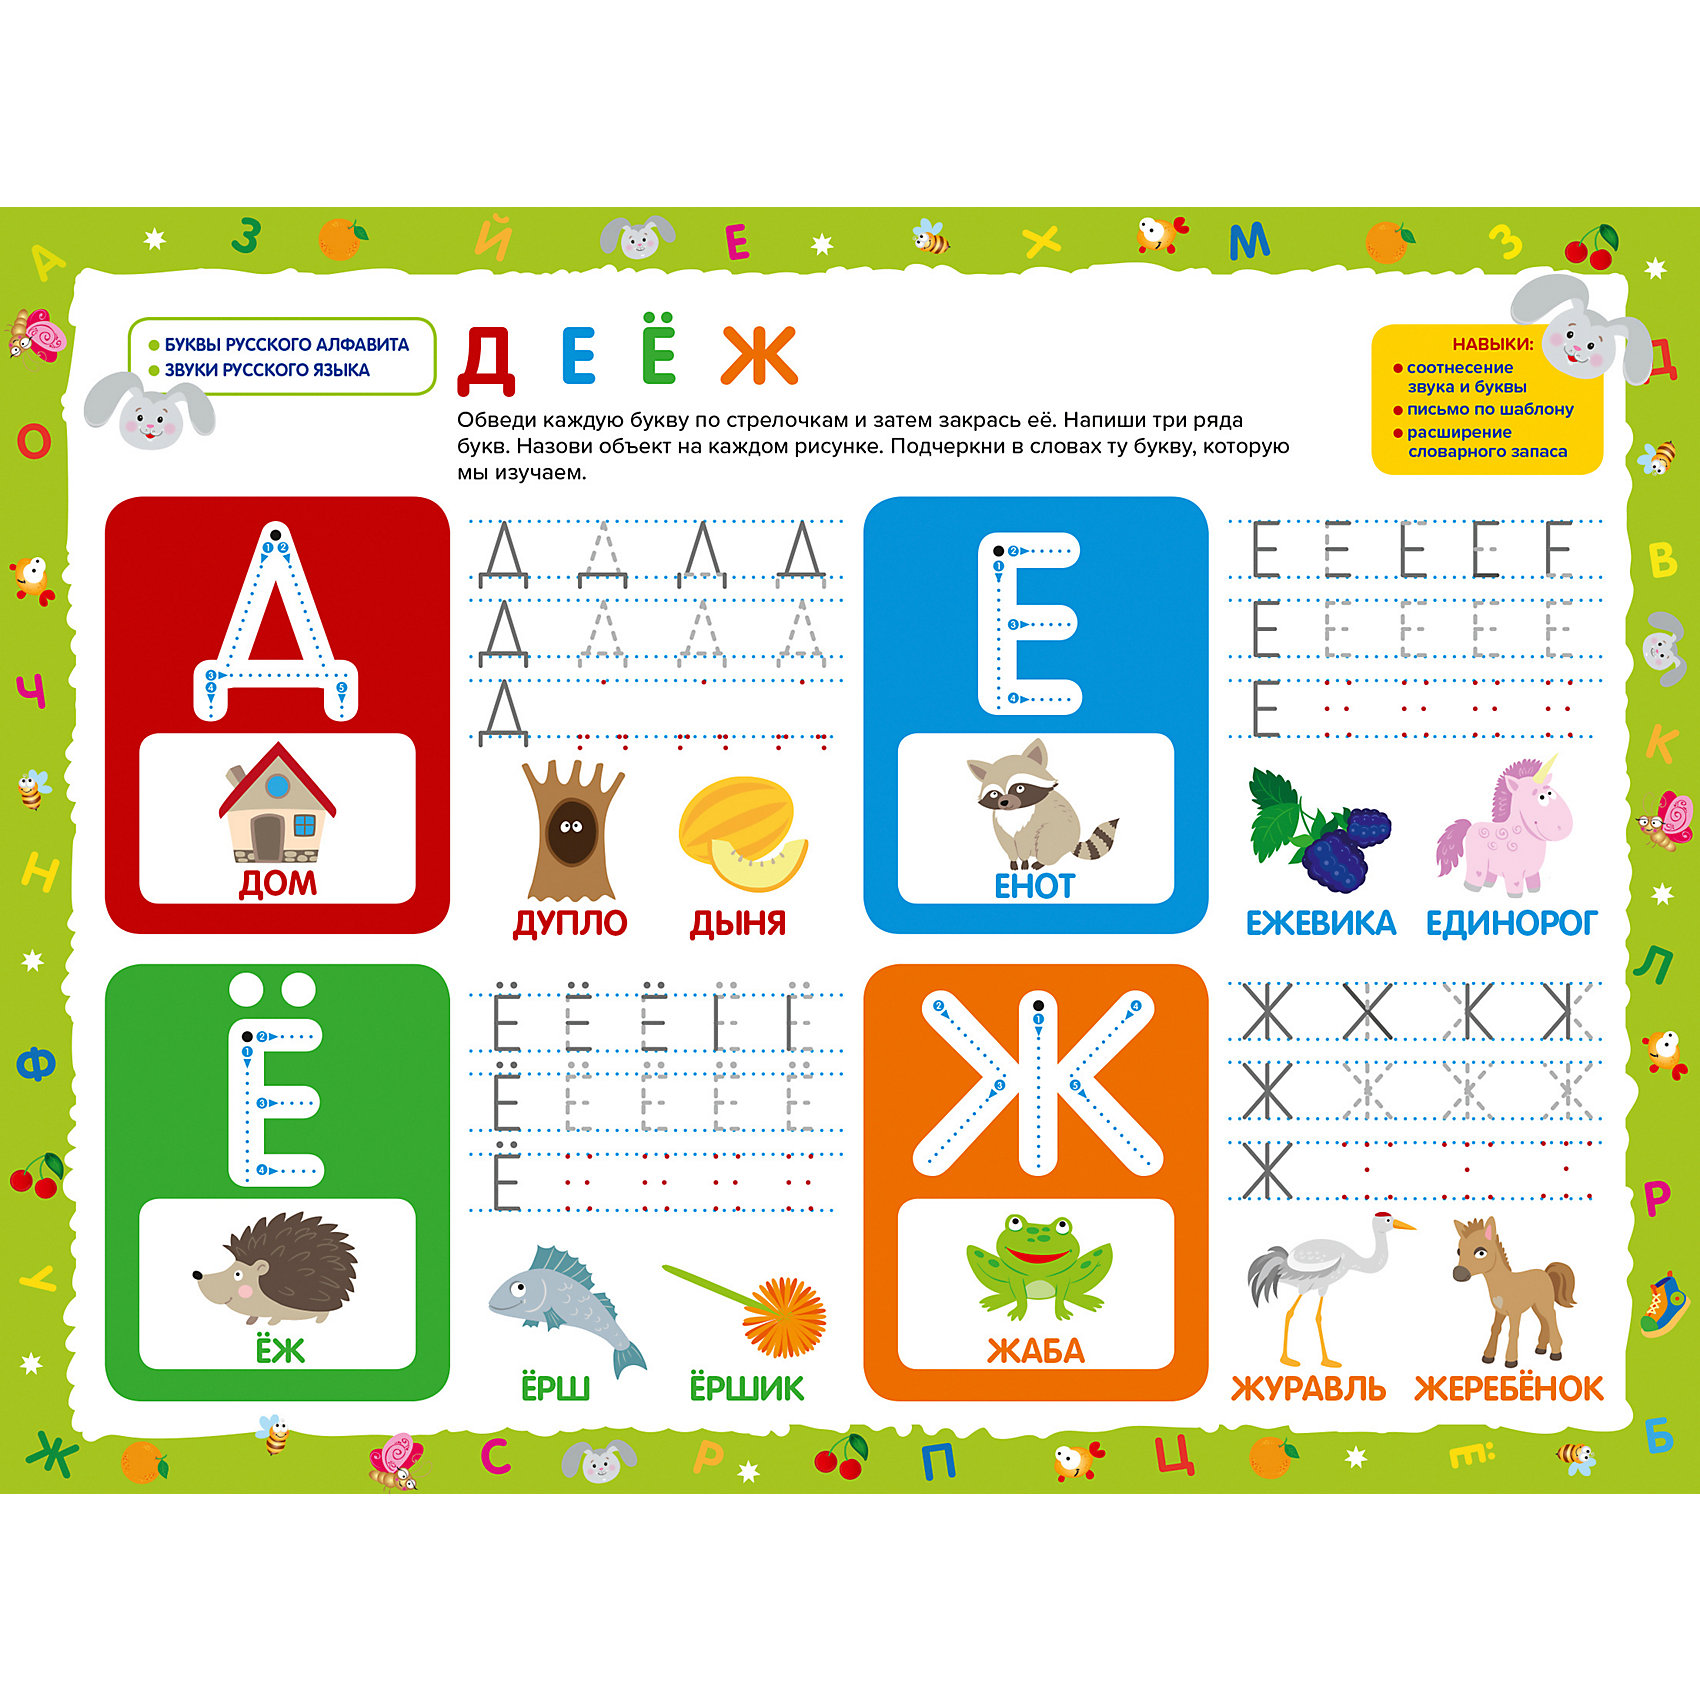 Алфавит для детей 3 4 лет учим. Учим буквы. Учим буквы для детей. Изучение алфавита для дошкольников. Изучение буквы а в игровой форме.